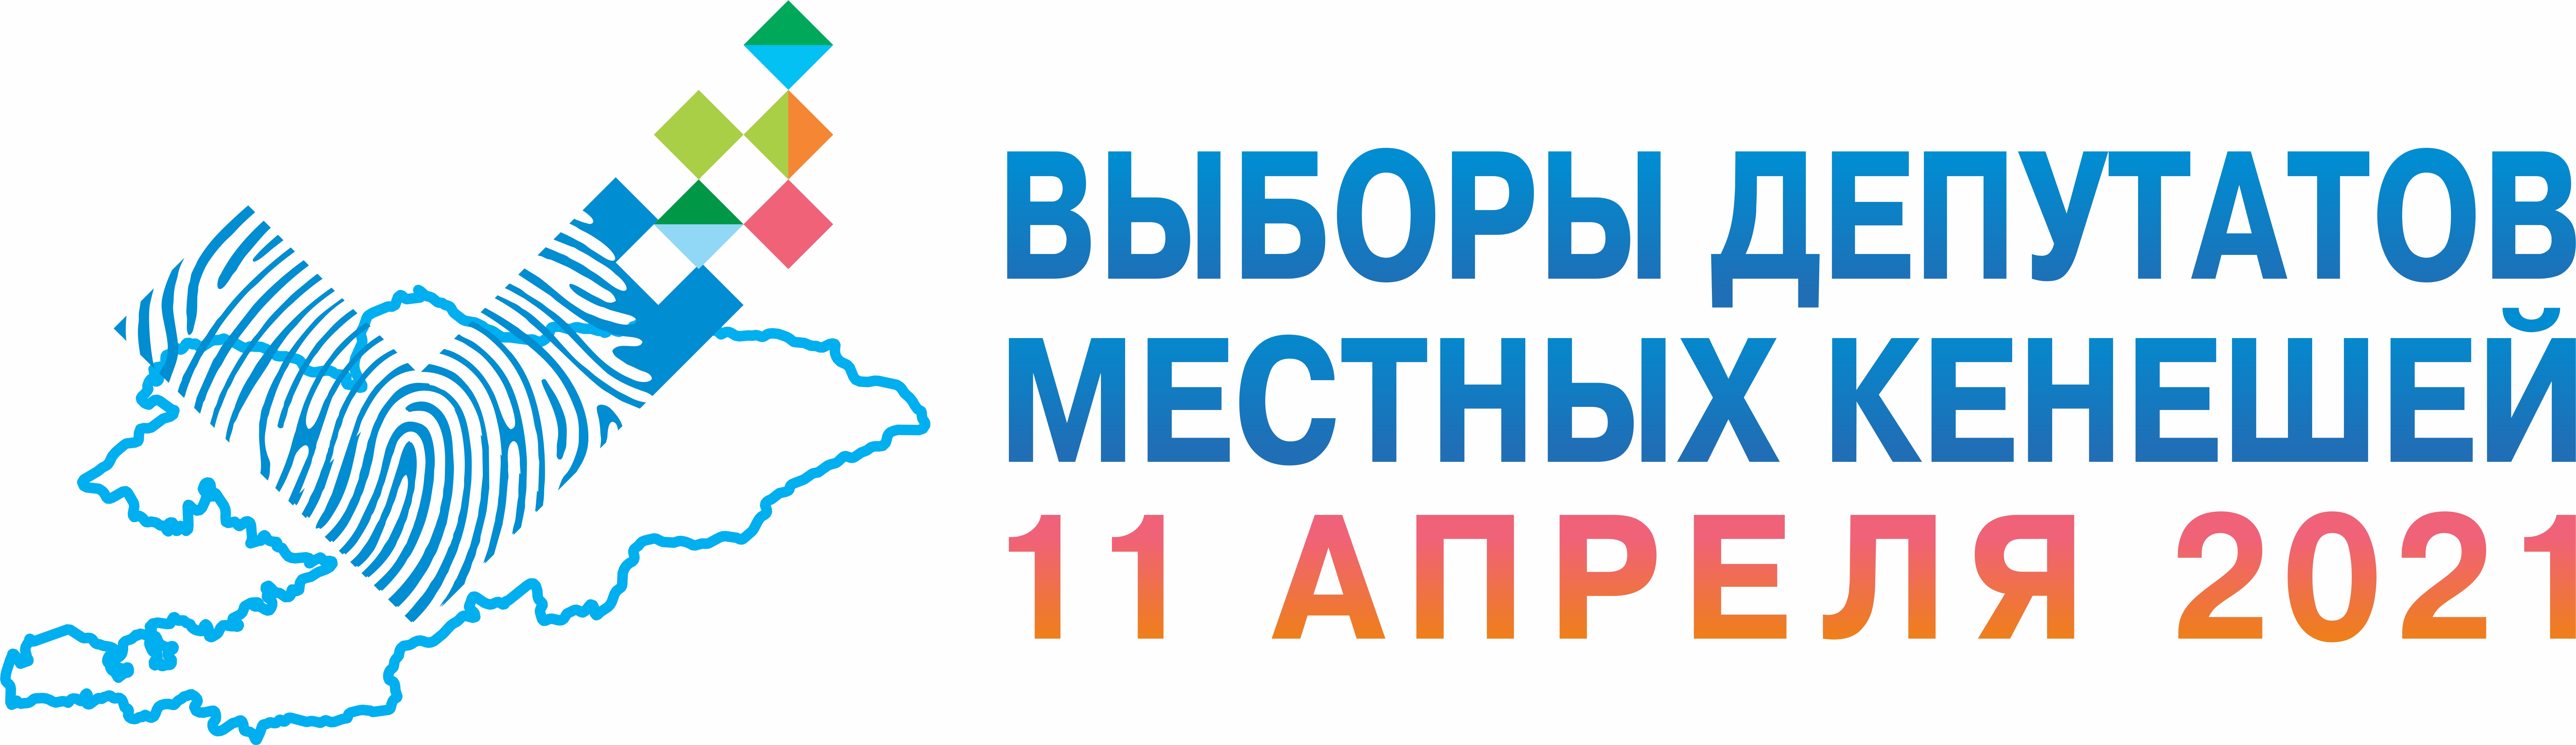 28 июня 2021 г. Шайлоо 2021. Выбор Кыргызстан 2021. ЦИК кр логотип. Выборы Кыргызстан.